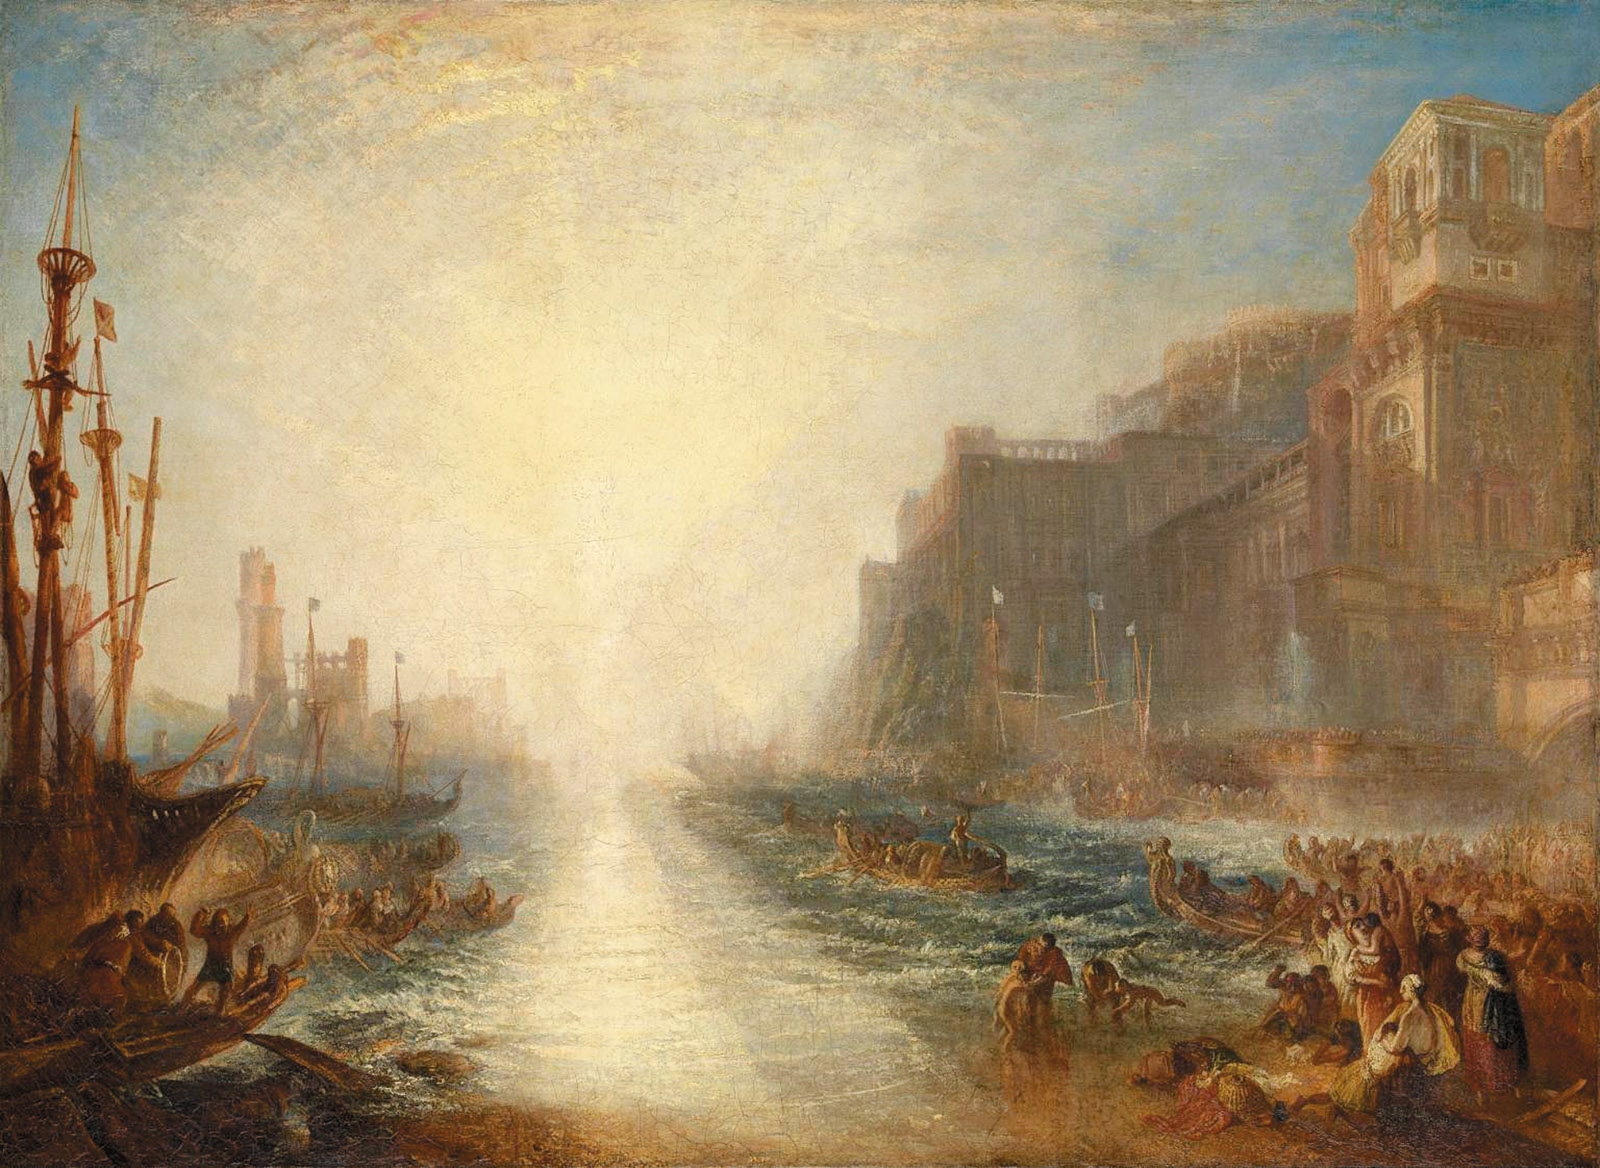 J.M.W. Turner: Regulus, 1828/1837